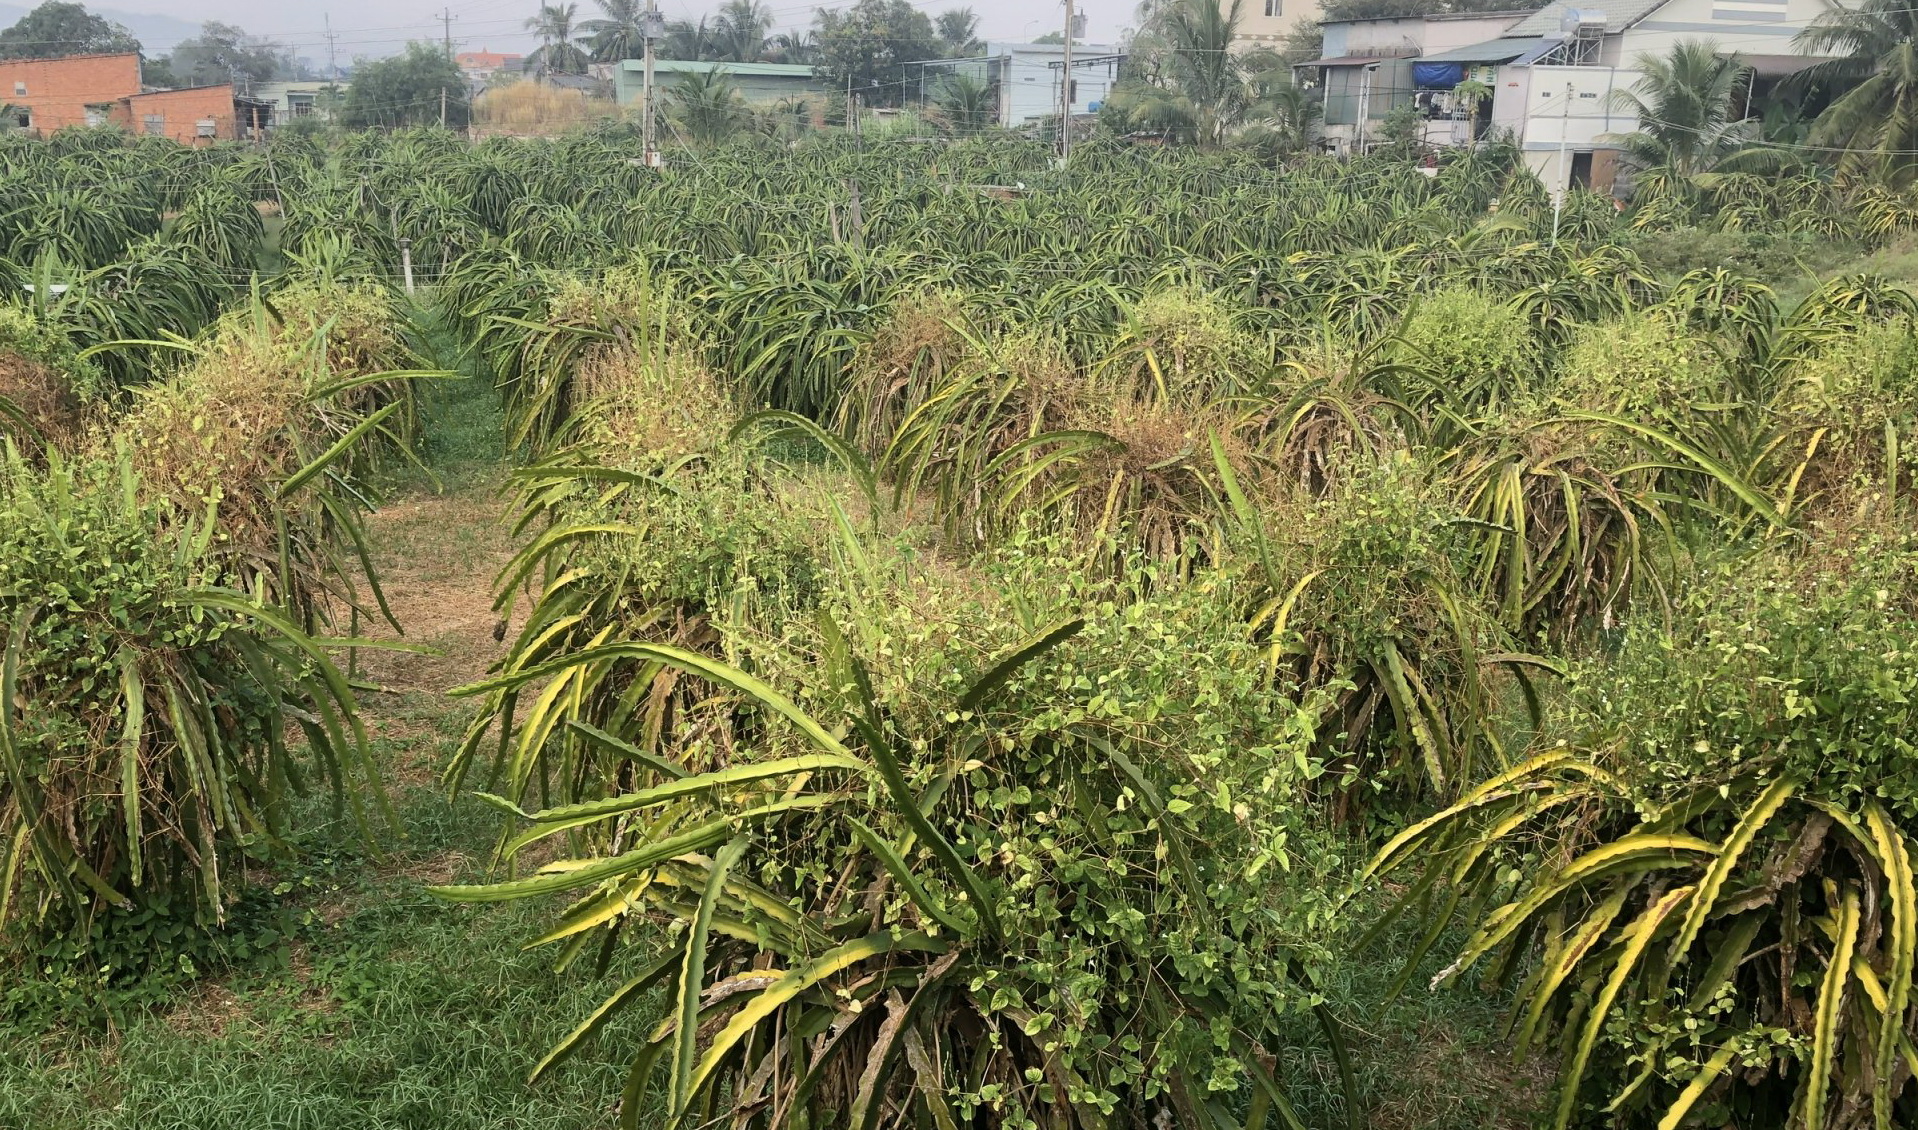 Bình Thuận: Nhiều nông dân bỏ thanh long chuyển sang cây trồng khác - Ảnh 1.